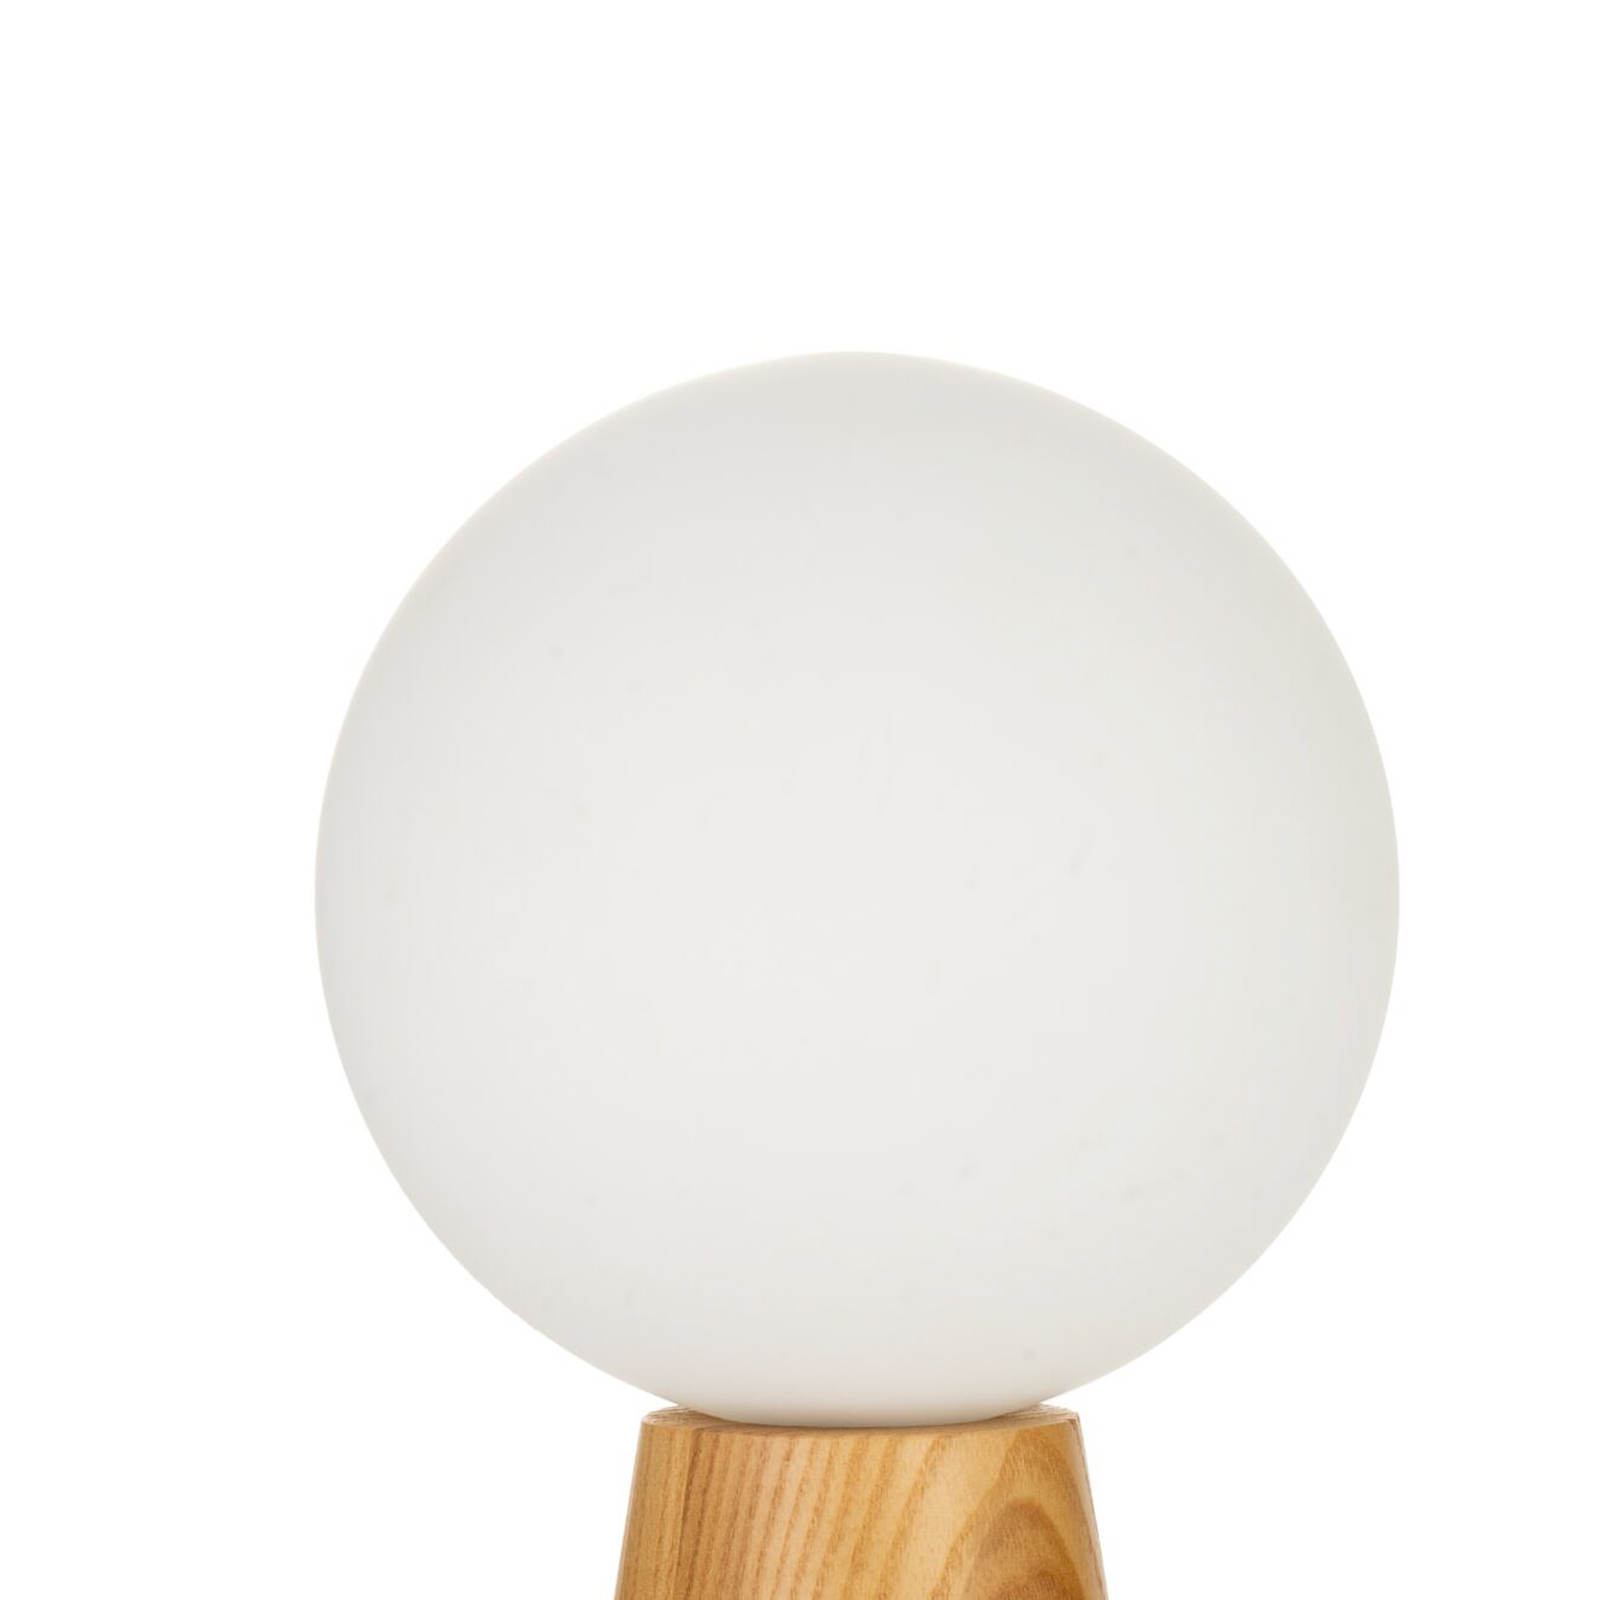 Pauleen Woody Soul lampa stołowa, drewno, szkło